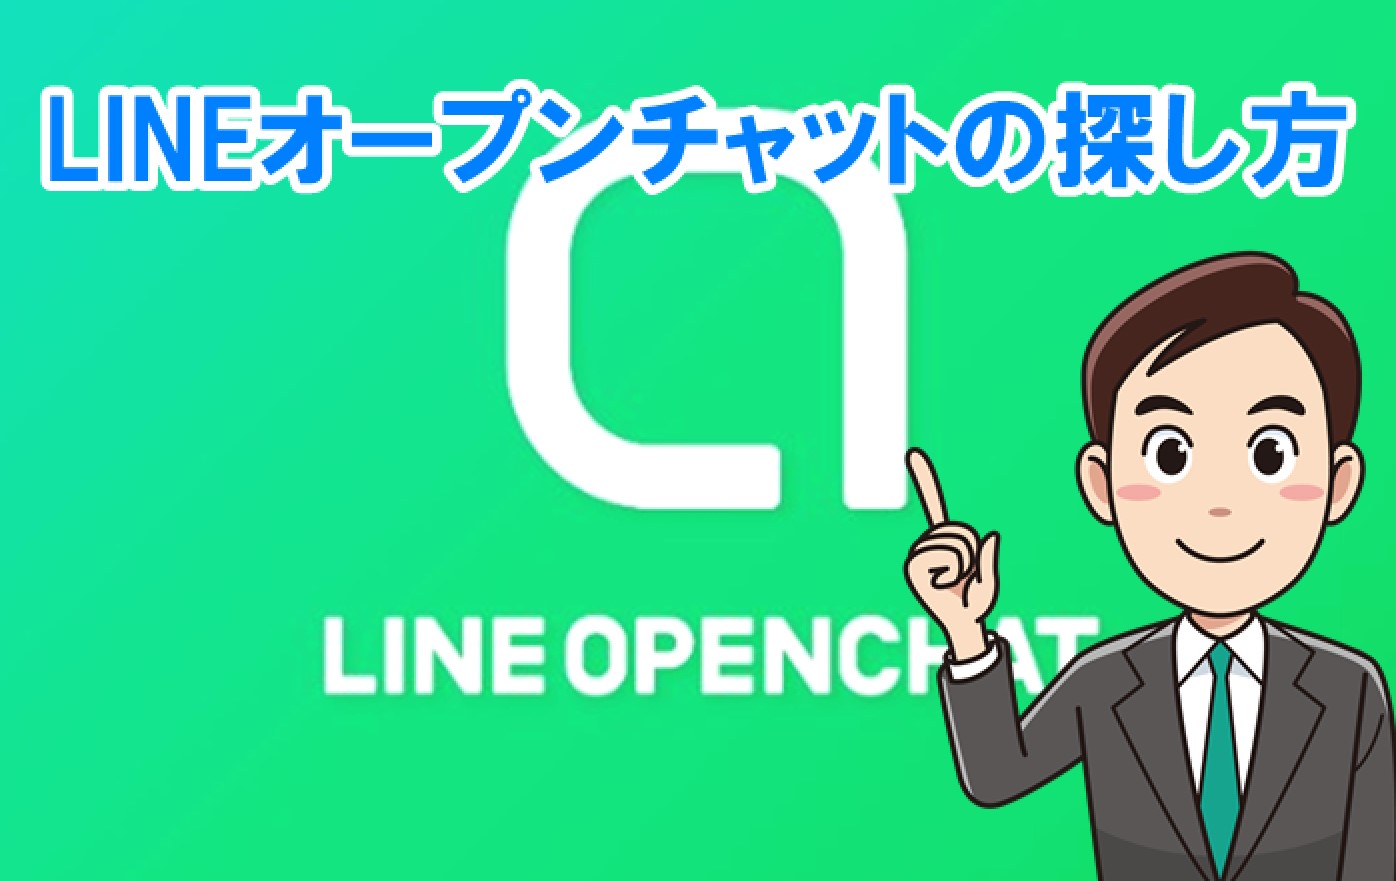 LINE ID